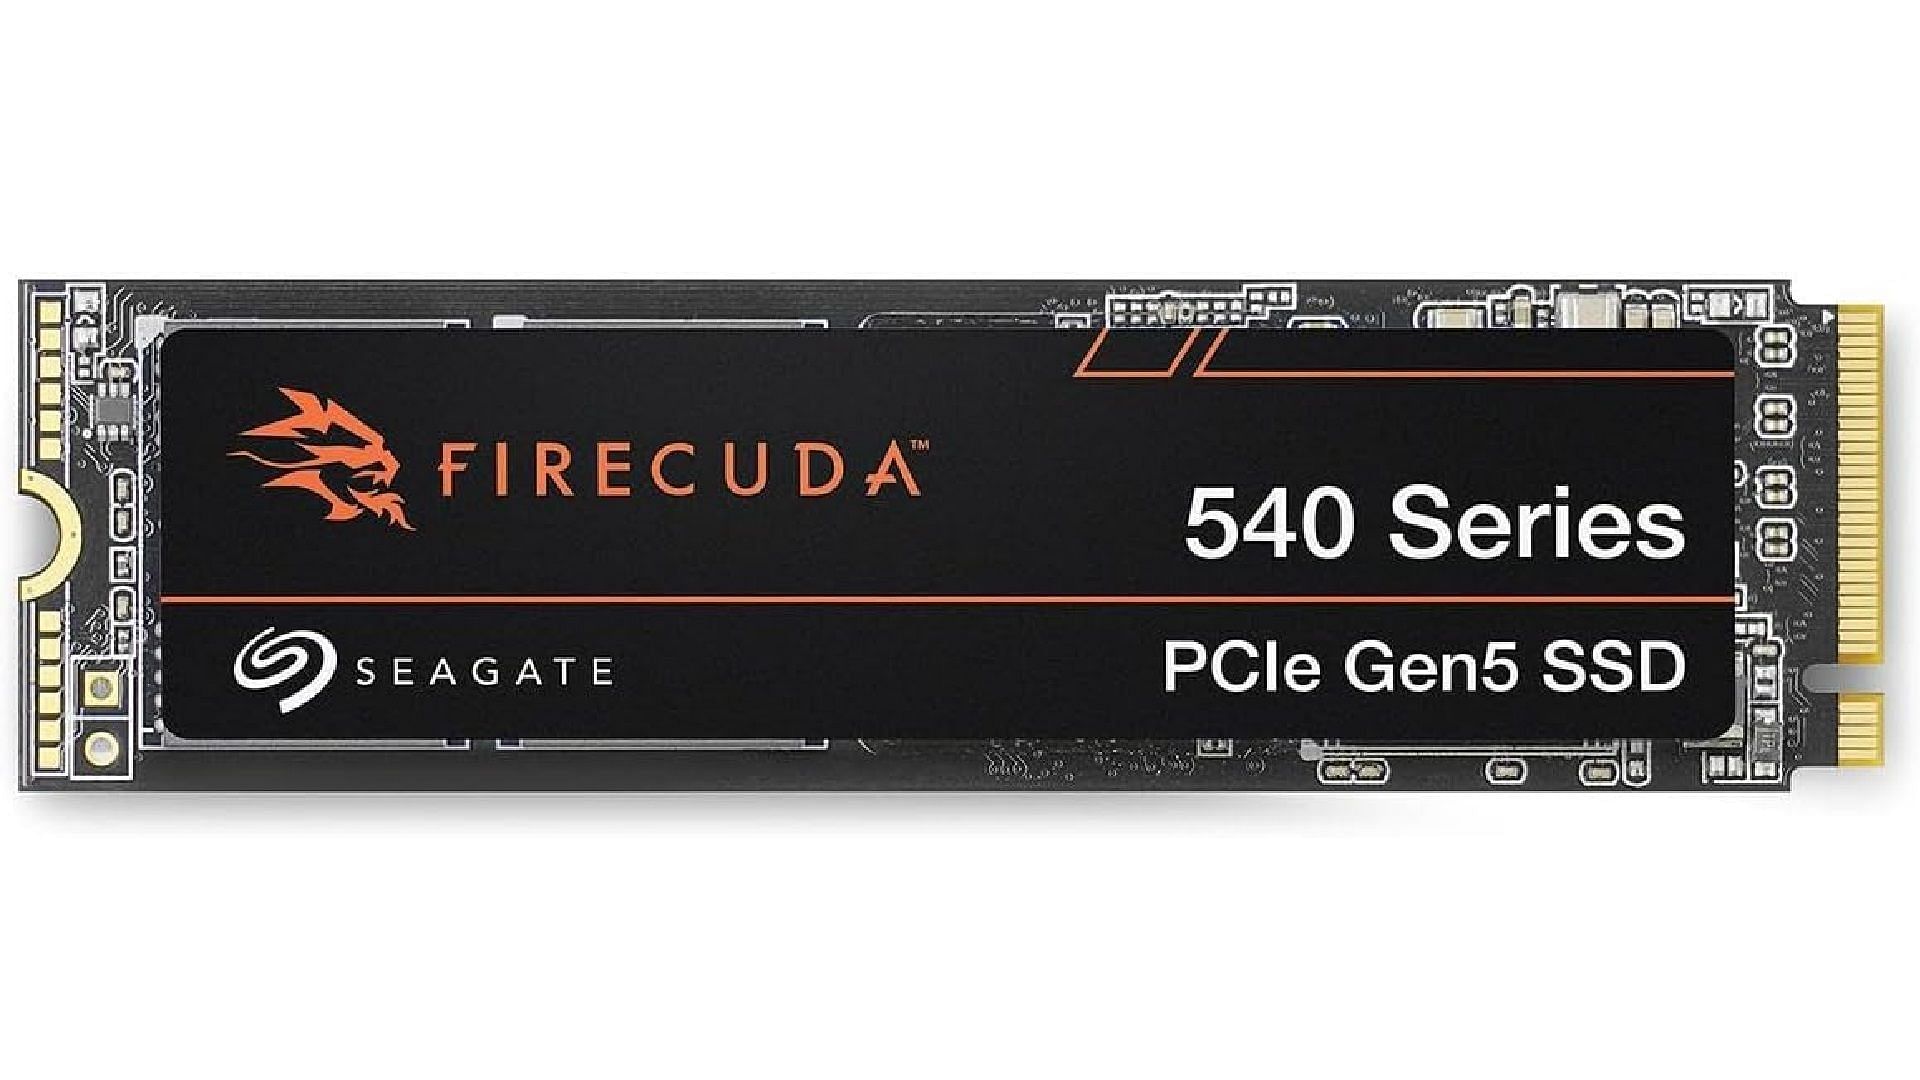 Seagate FireCuda 540 Gen 5 SSD (Image via Seagate)